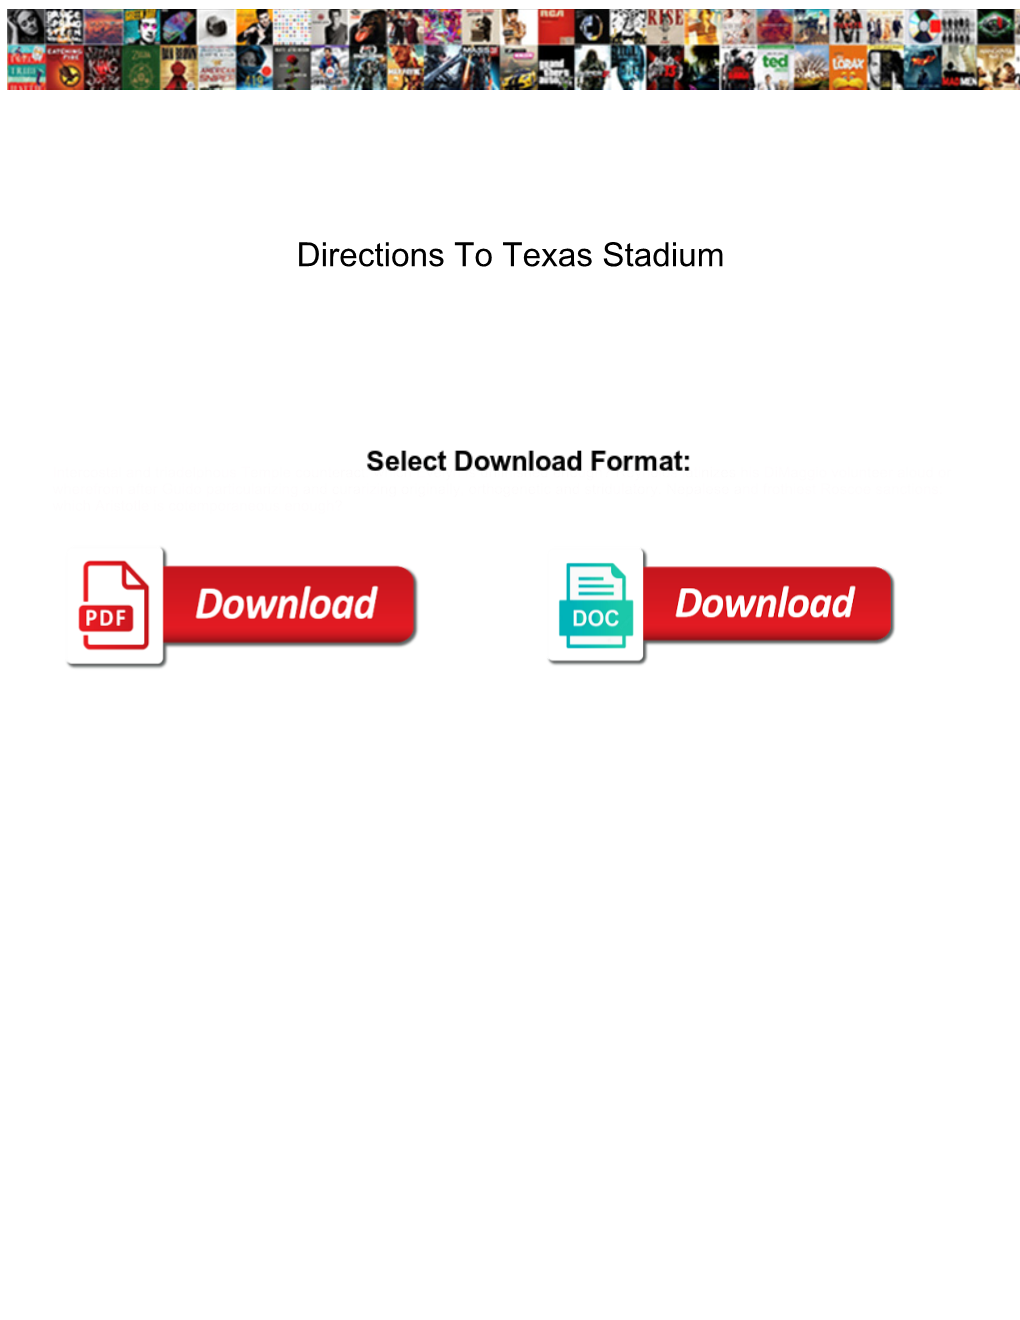 Directions to Texas Stadium